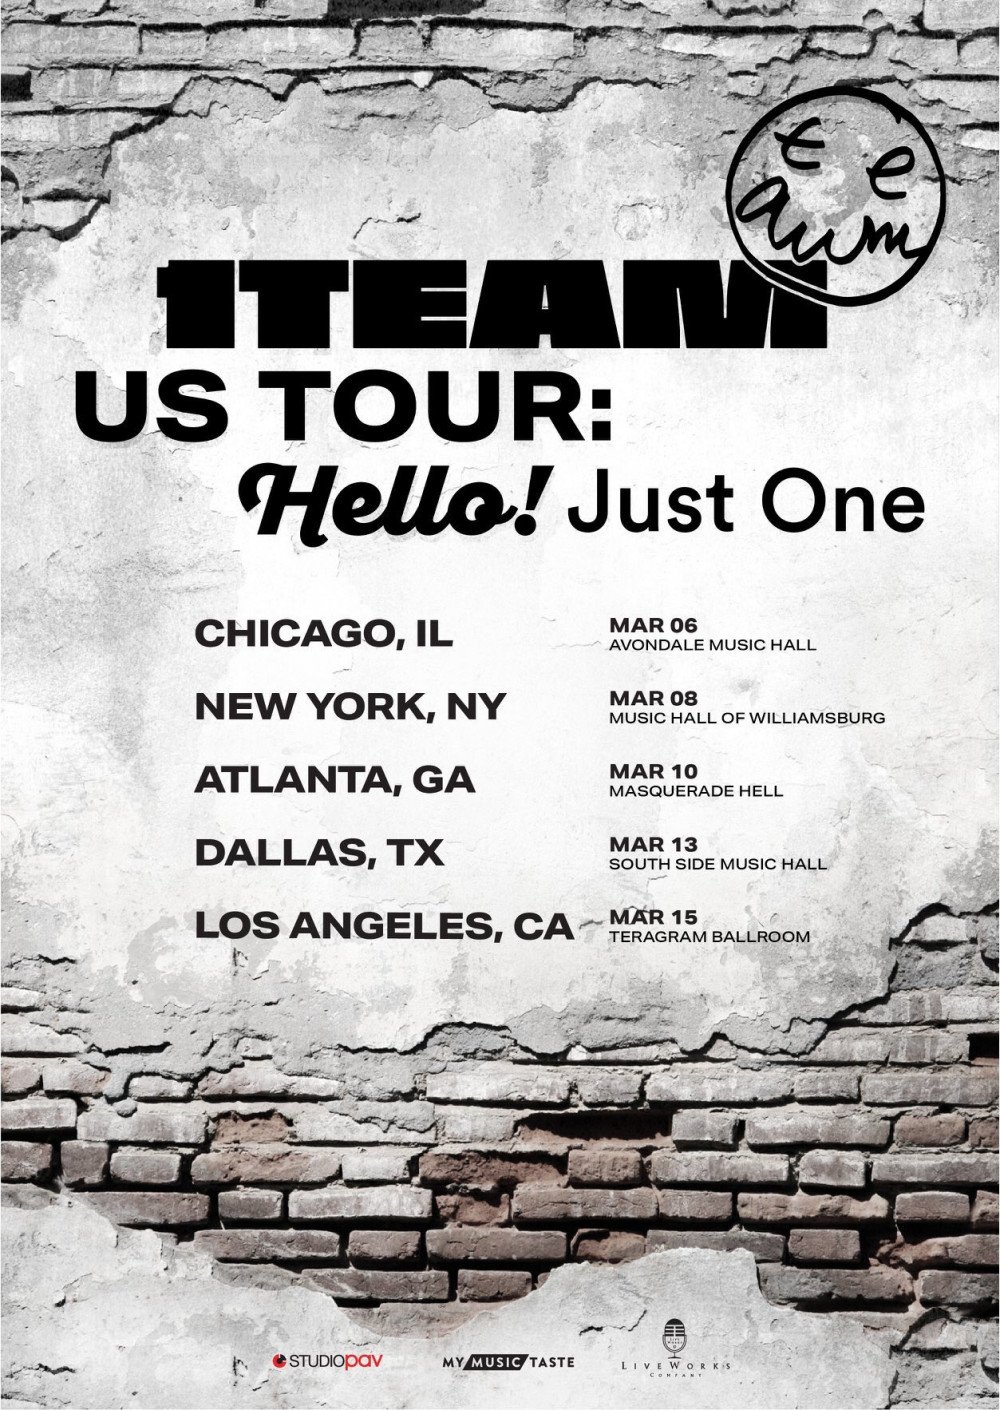 1TEAM анонсировали свой первый тур по США